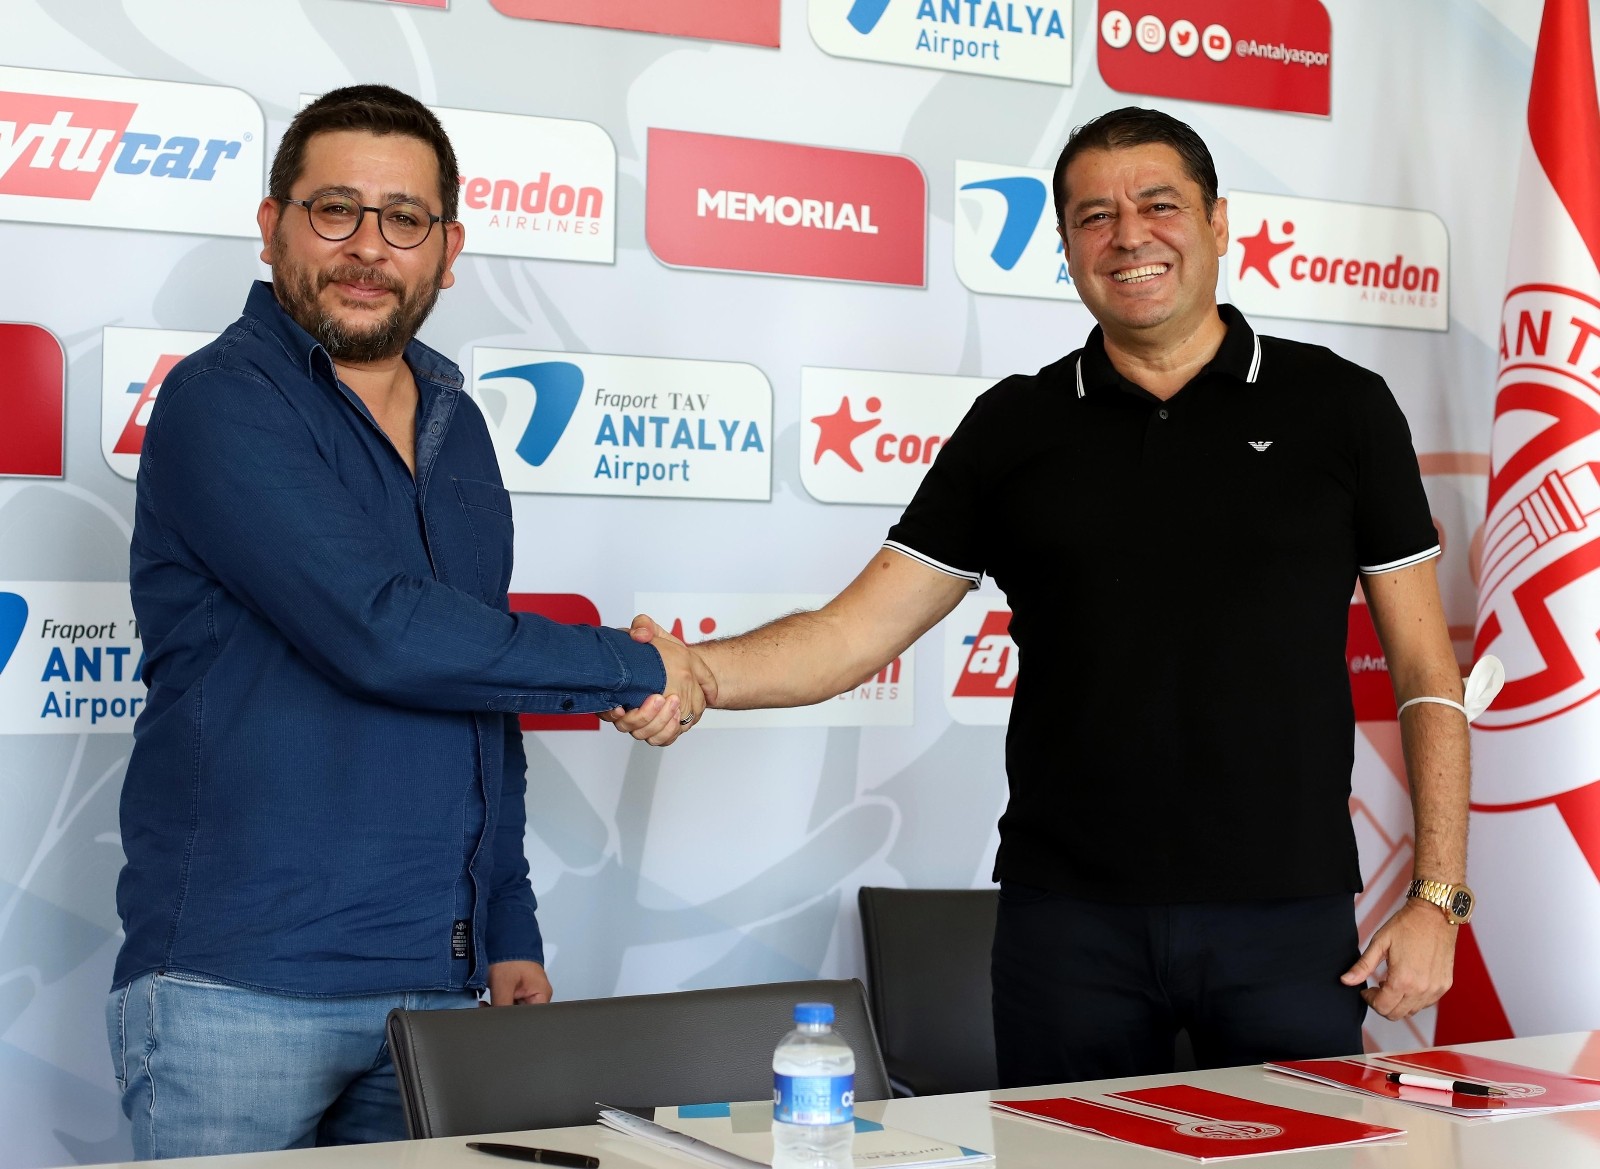 FT Antalyaspor ile Winter League arasında marka işbirliği sözleşmesi imzalandı